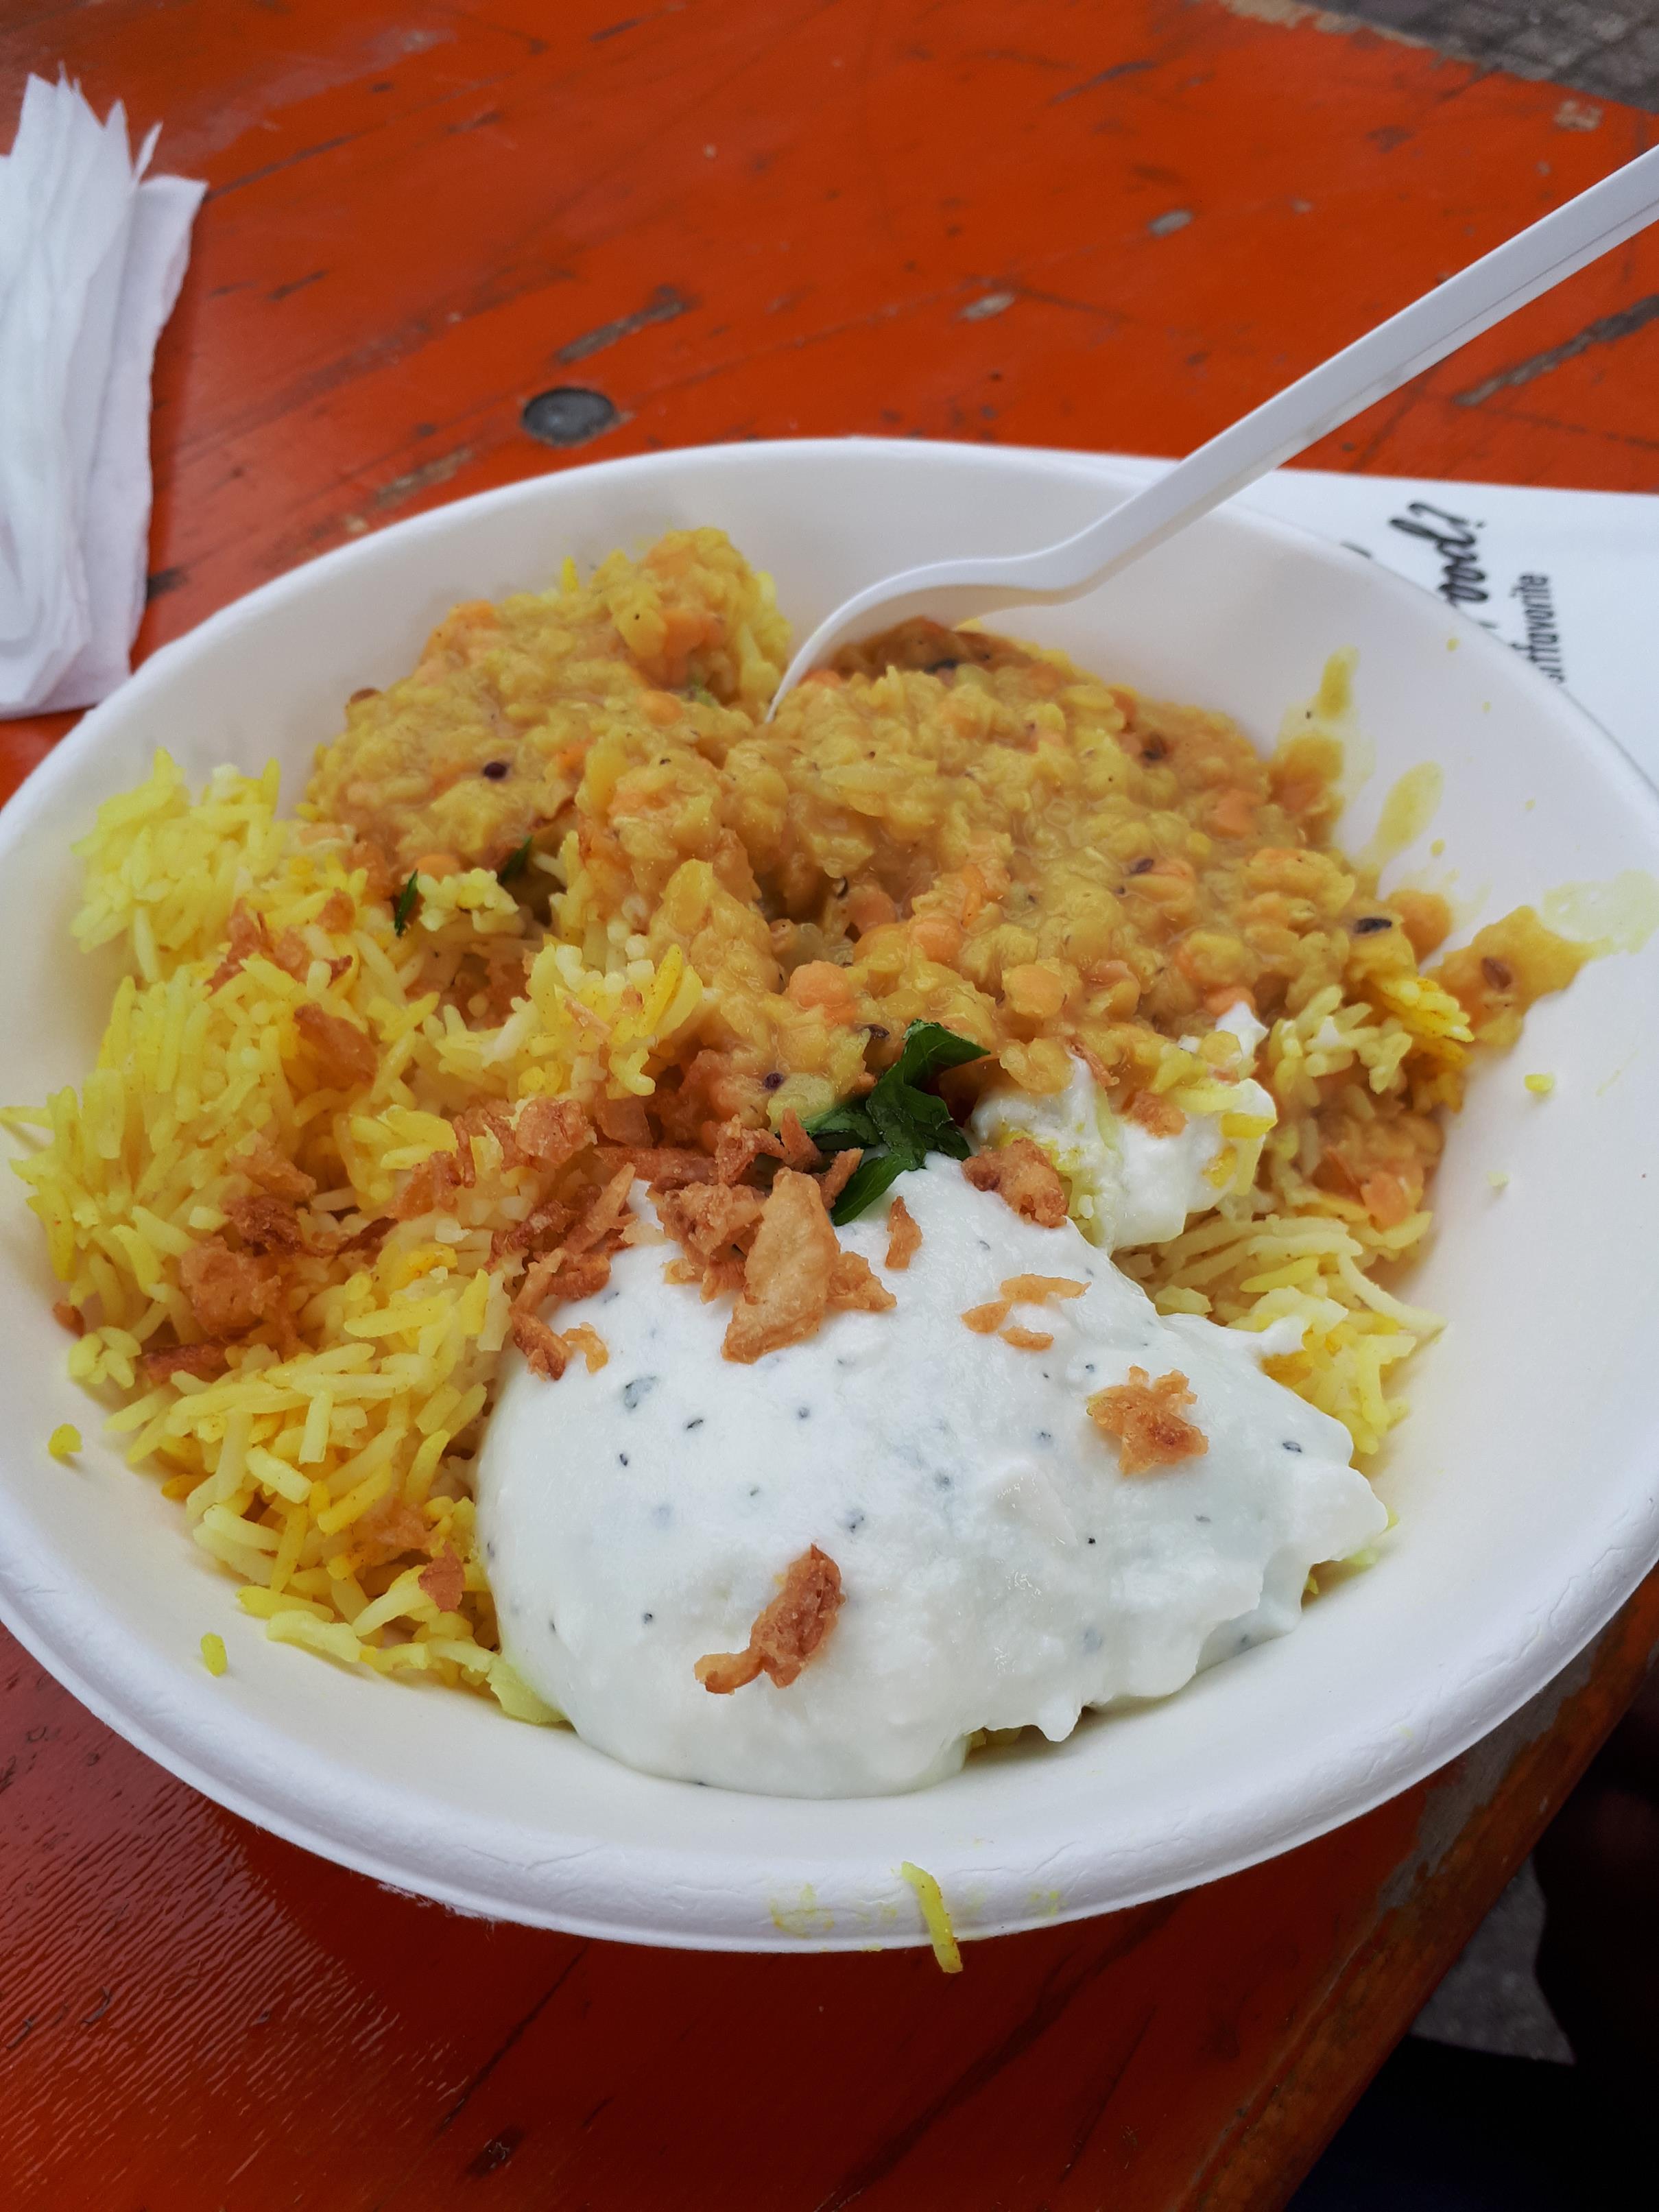 Vegetarisches Linsen-Curry von "Pitty's Indian Food" - sehr lecker!